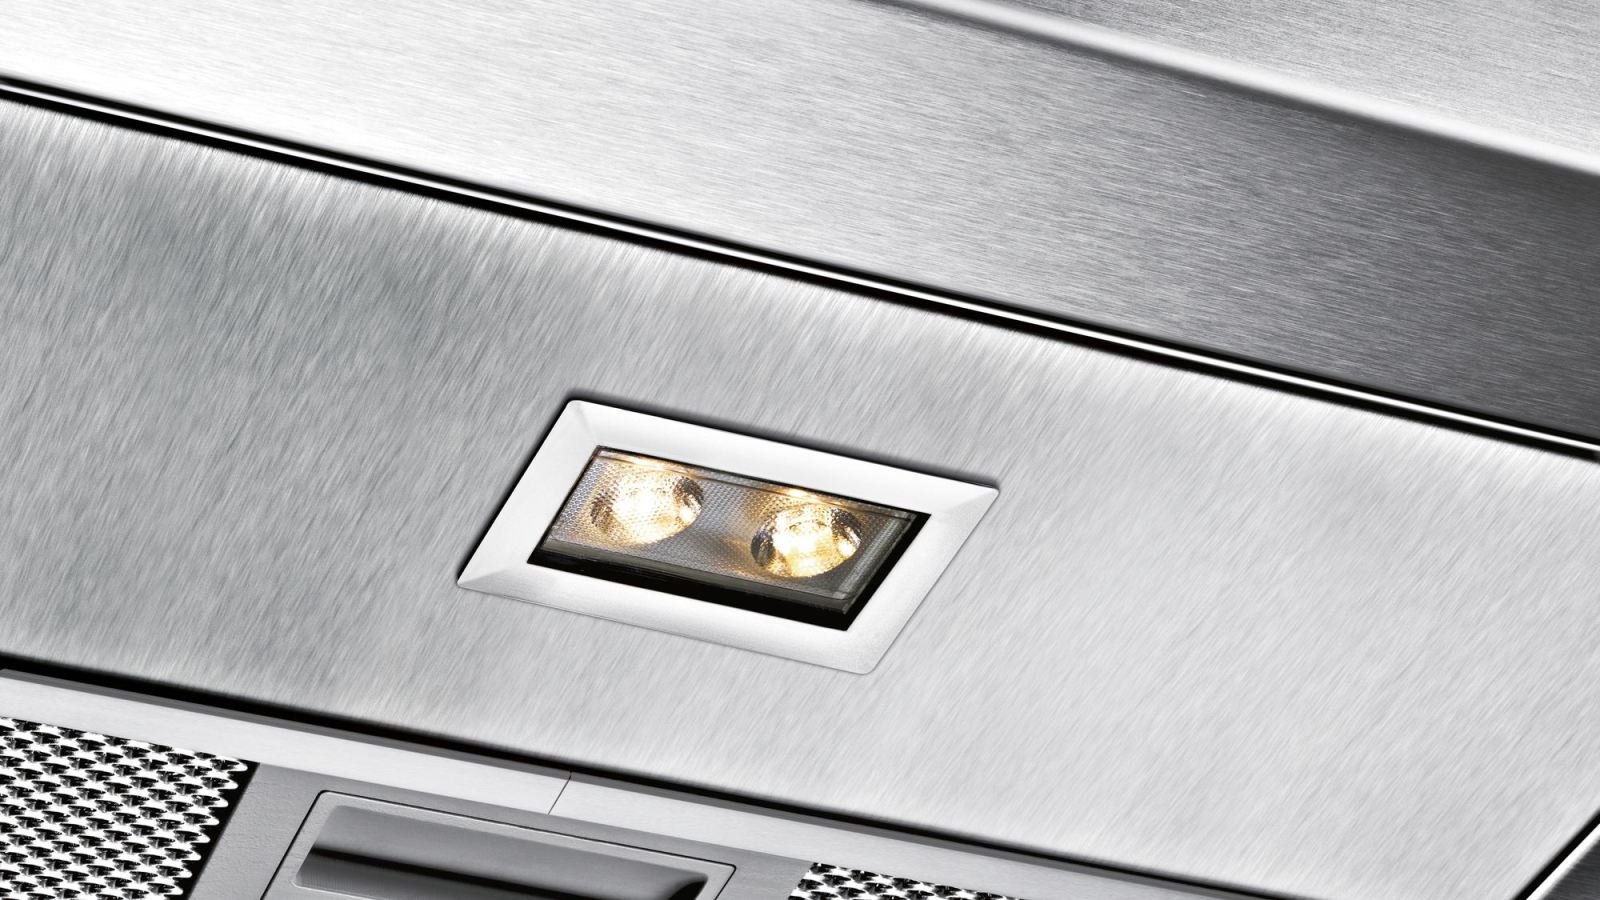 Hệ Thống chiếu sáng đèn LED Tiết kiệm tối đa điện năng Hệ thống chiếu sáng bằng Đèn LED Công nghệ tiết kiệm điện gồm một bộ 6 đèn LED với tuổi thọ kéo dài đến 40,000 giờ. Khi vận hành trên 2,7 giờ mỗi ngày và khoảng 40 năm hoạt động. Nhờ các cường độ ánh sáng của đèn LED nên đây là loại đèn tốt nhất trên thị trường hiện nay. Đặc biệt một số model hút mùi còn có chức năng điều chỉnh ánh sáng. Với máy hút mùi bosch nhà bếp sẽ trở thành nơi yêu thích nhất trong ngôi nhà của bạn.